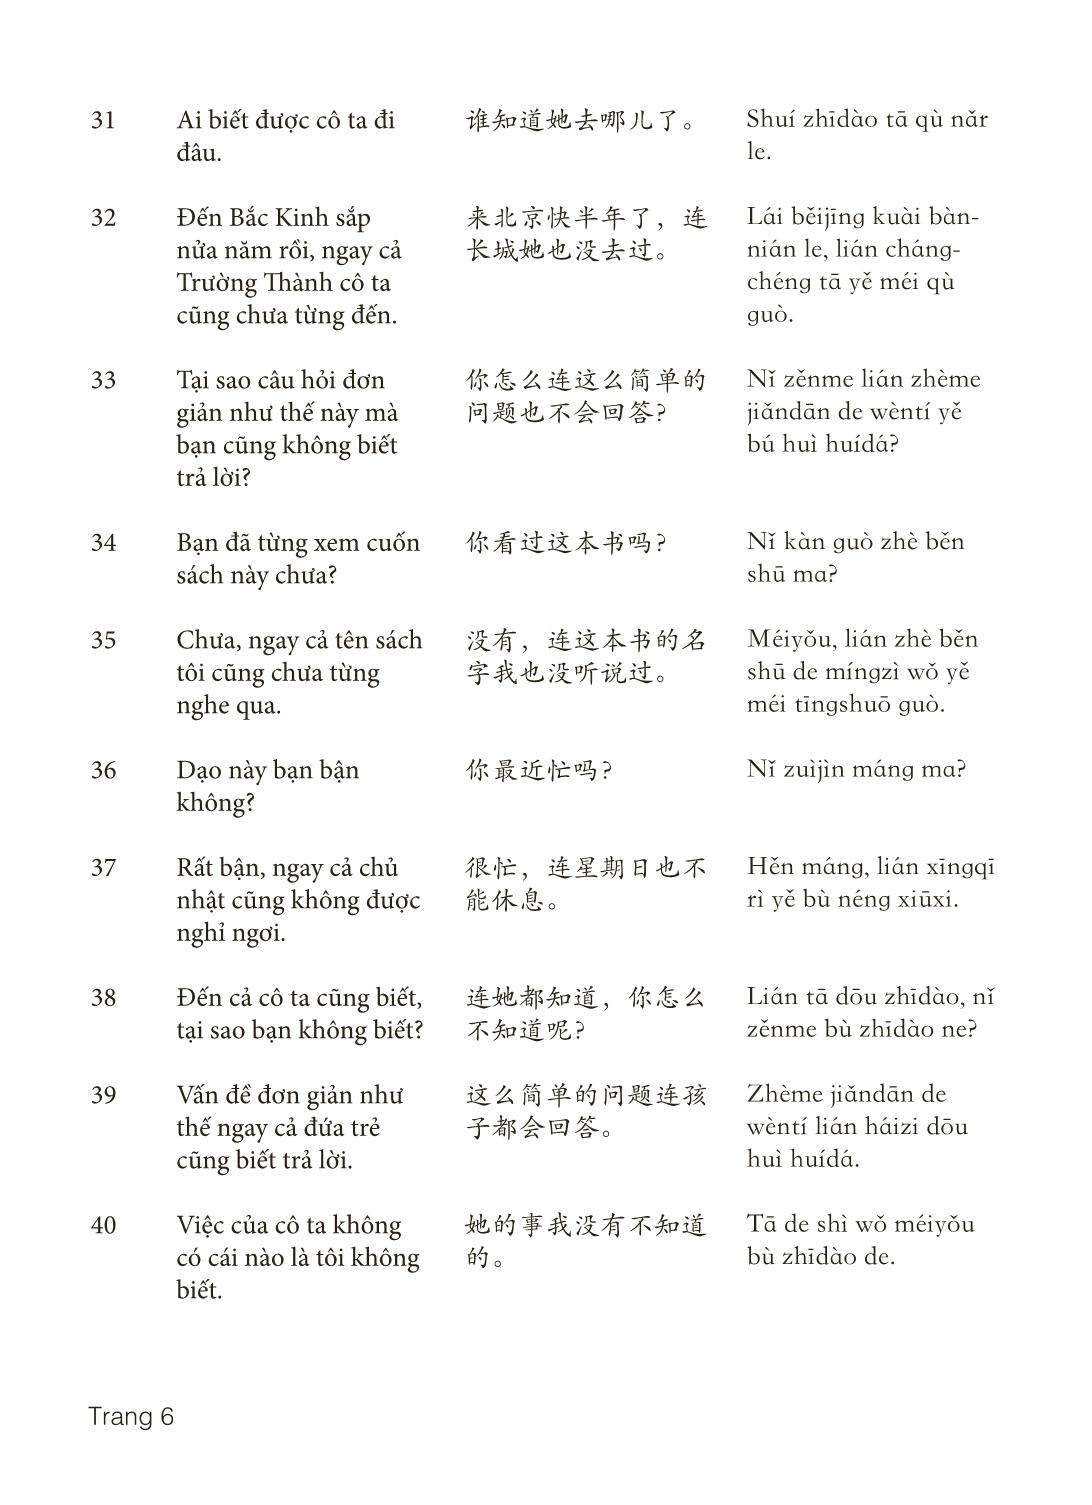 3000 Câu đàm thoại tiếng Hoa - Phần 29 trang 6